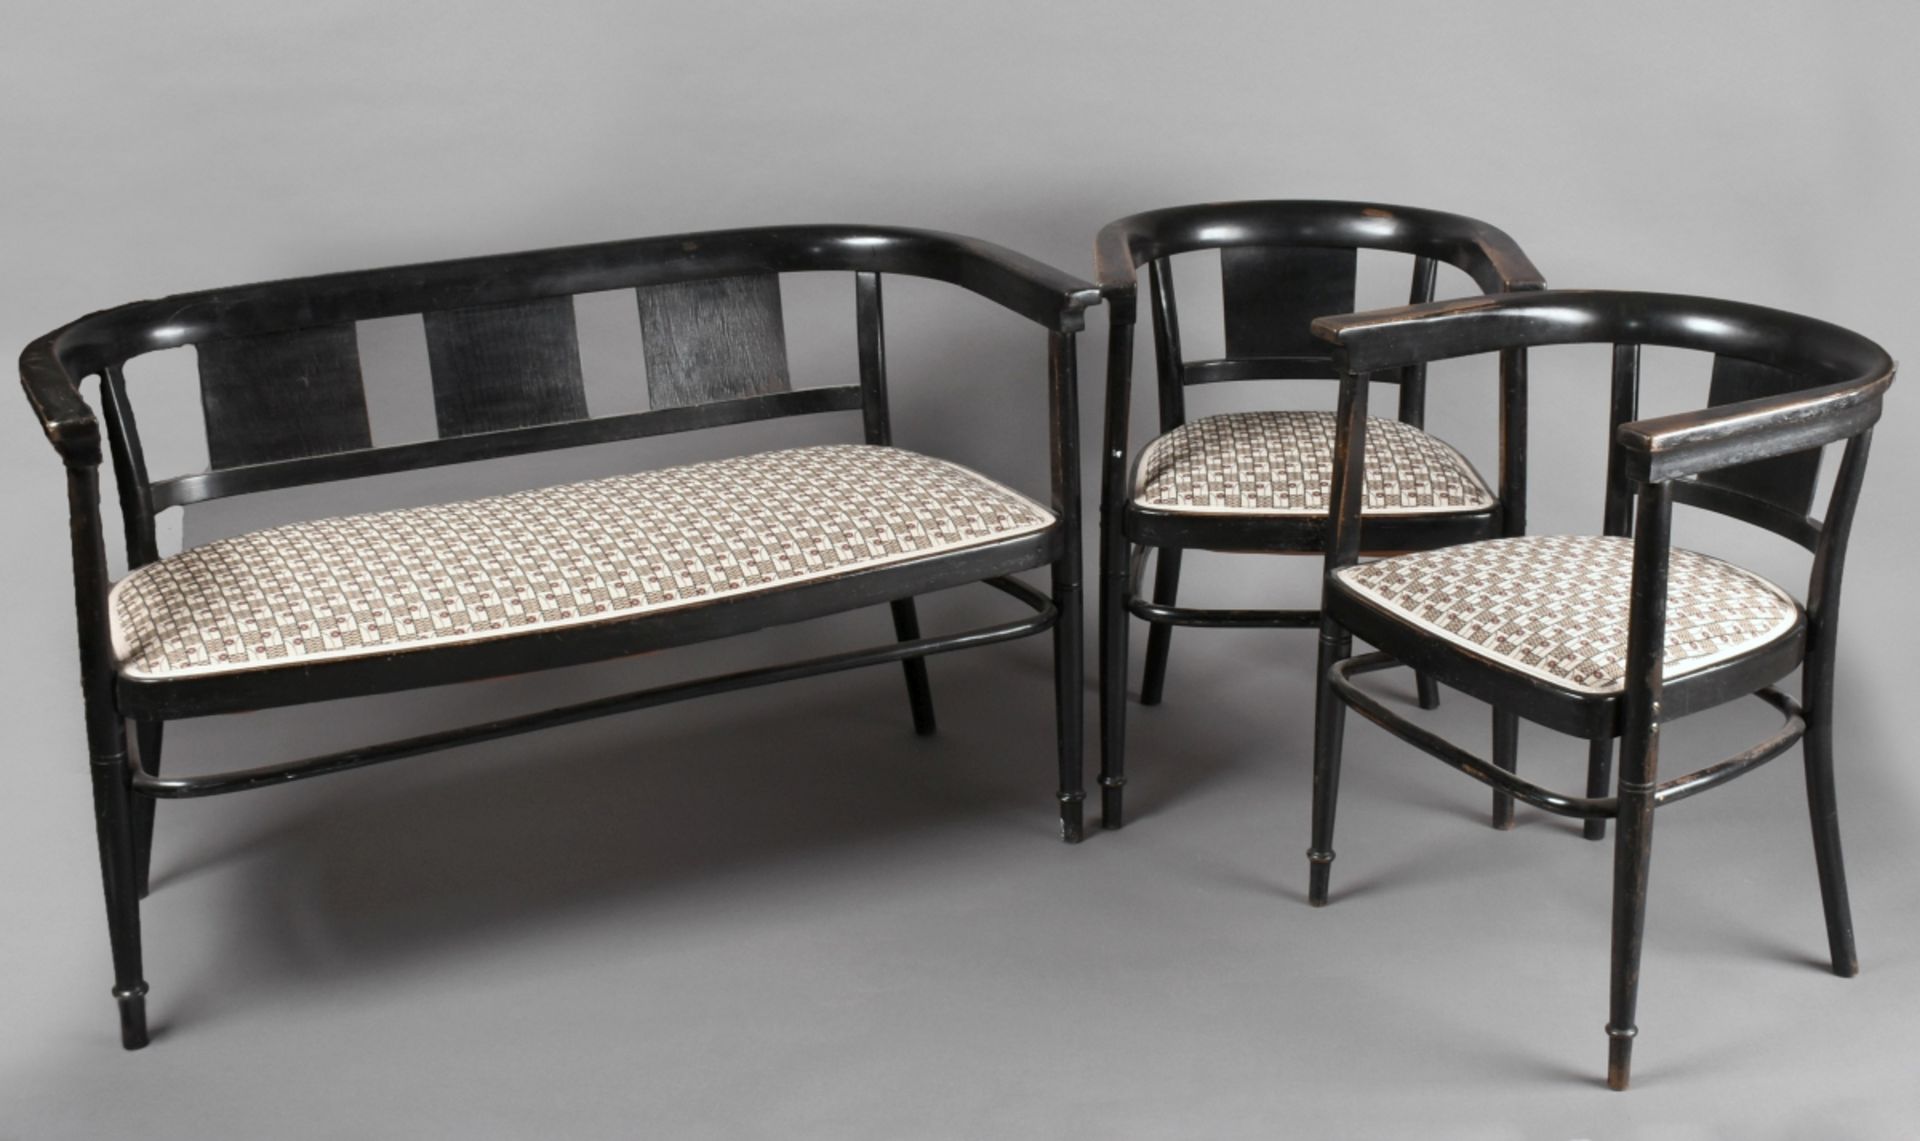 Jugendstil-Sitzgarnitur im Stil der Wiener Moderne, bestehend aus Sitzbank und 2 Armlehnstühlen, s - Bild 2 aus 4